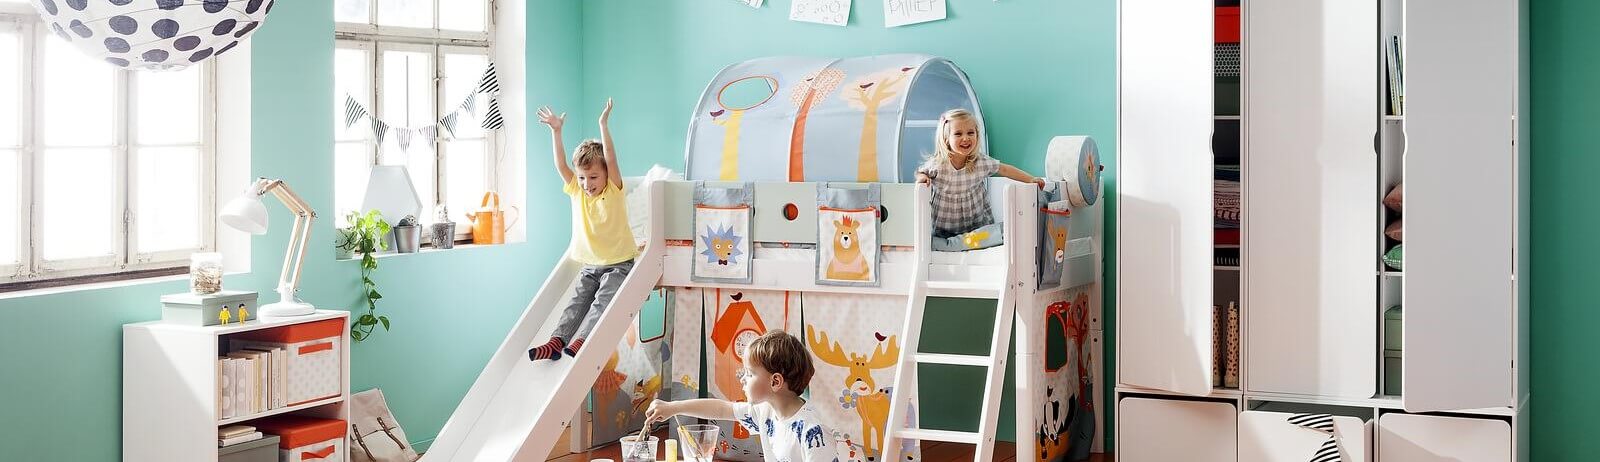 Headerbild für Baby-, Kinder- und Jugendzimmer: Spielende Kinder auf einem Spiebett mit Rutsche